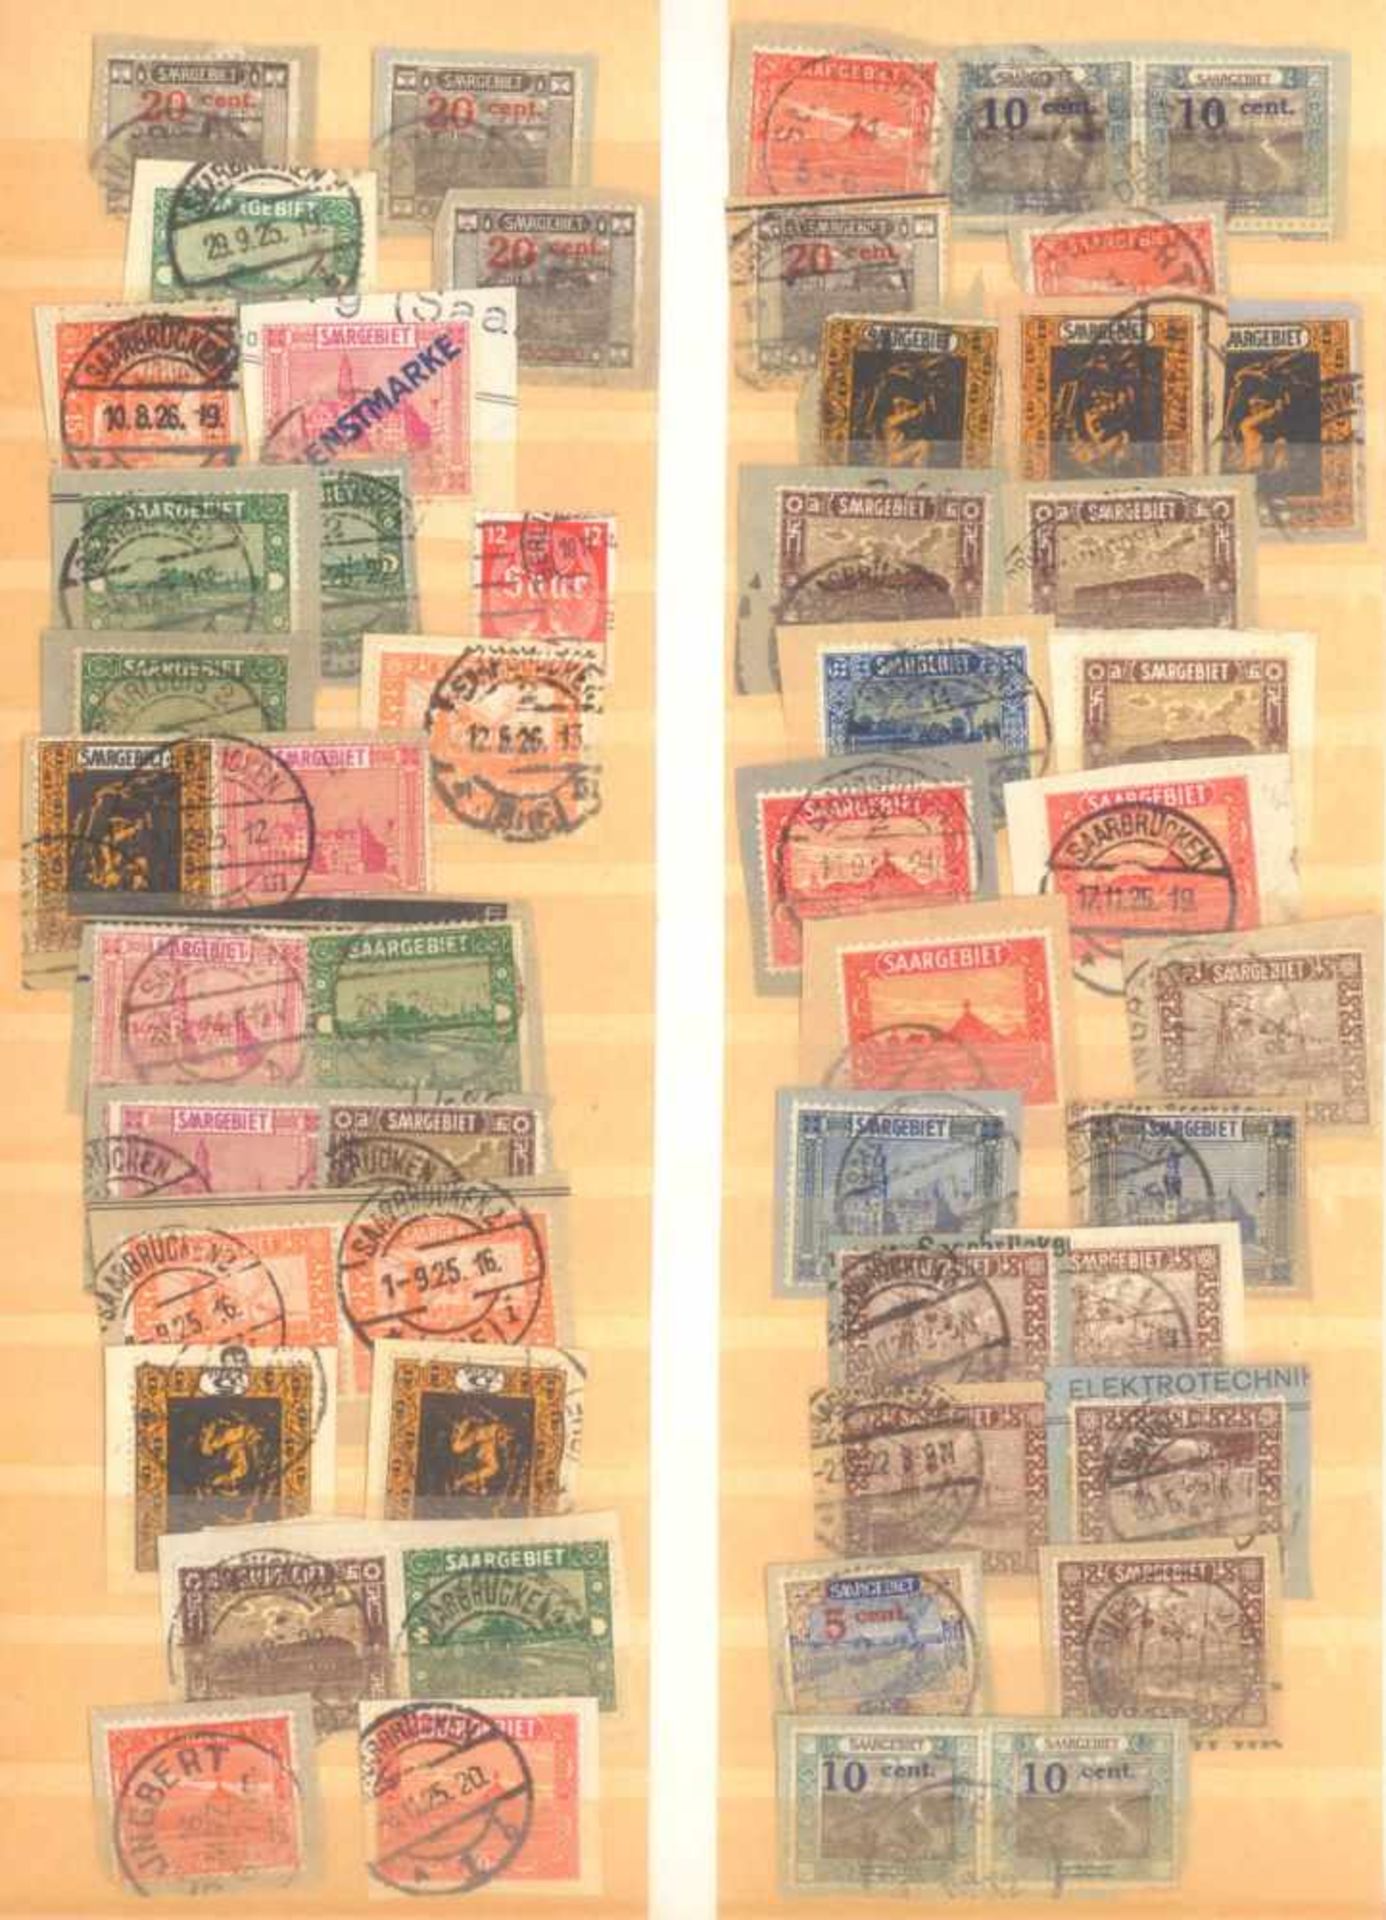 FRANKENTHALER NACHLASSuriger Nachlass mit Briefmarken und Belegen. Dabei DeutschesReich, altes - Image 10 of 46